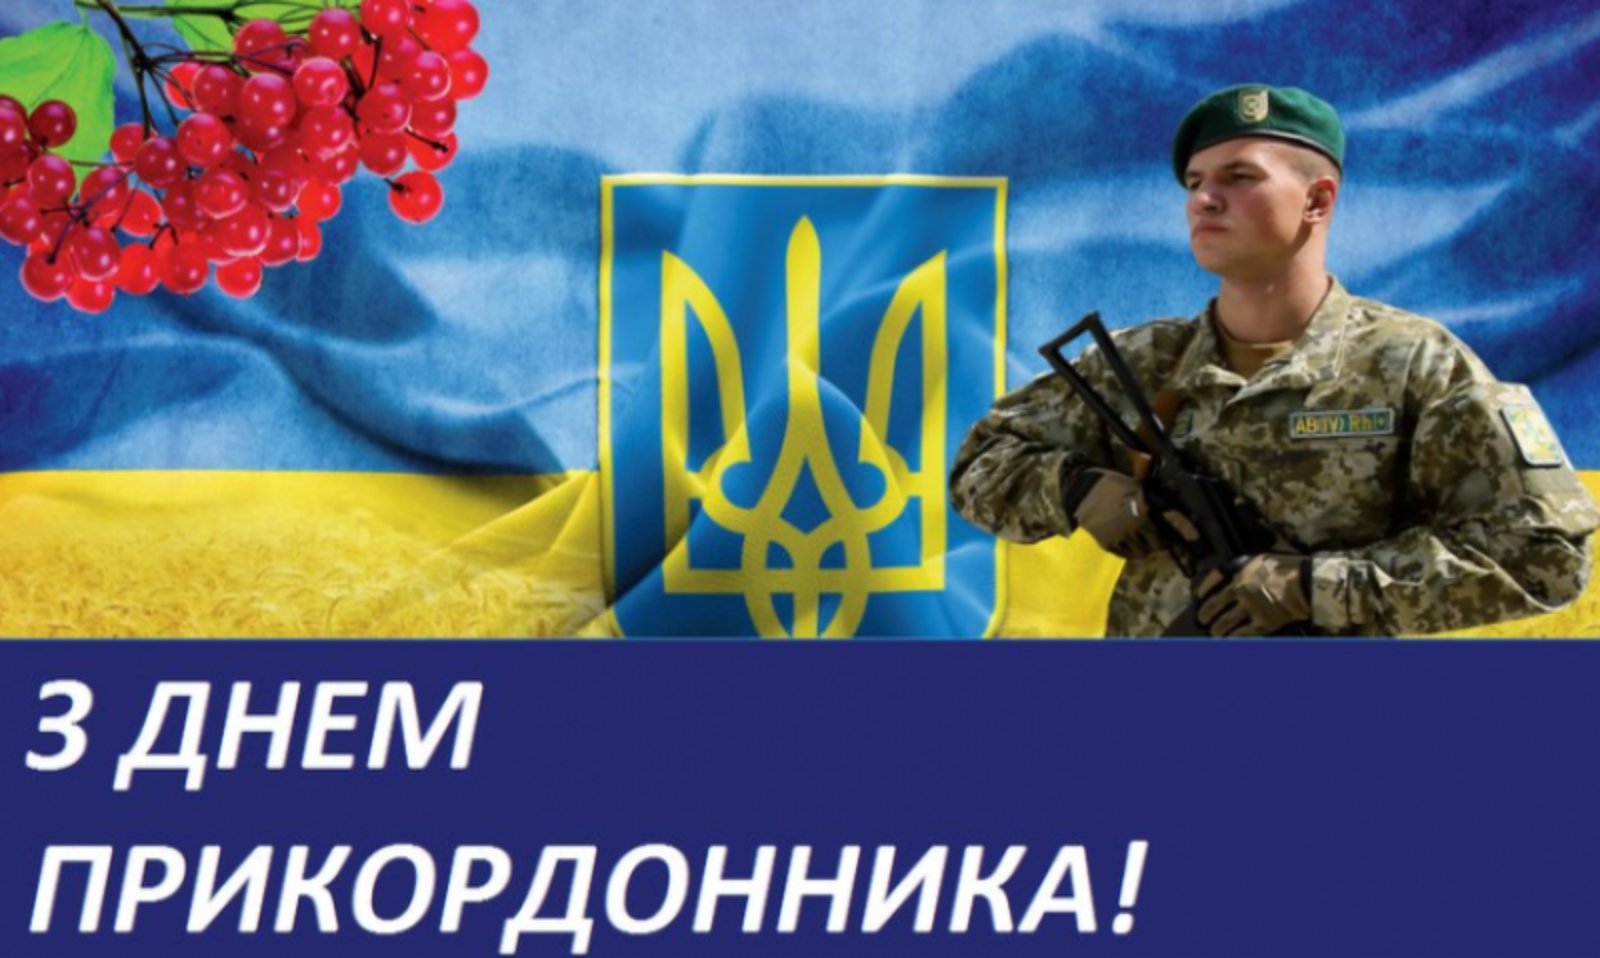 Профспілка вітає прикордонників України з професійним святом